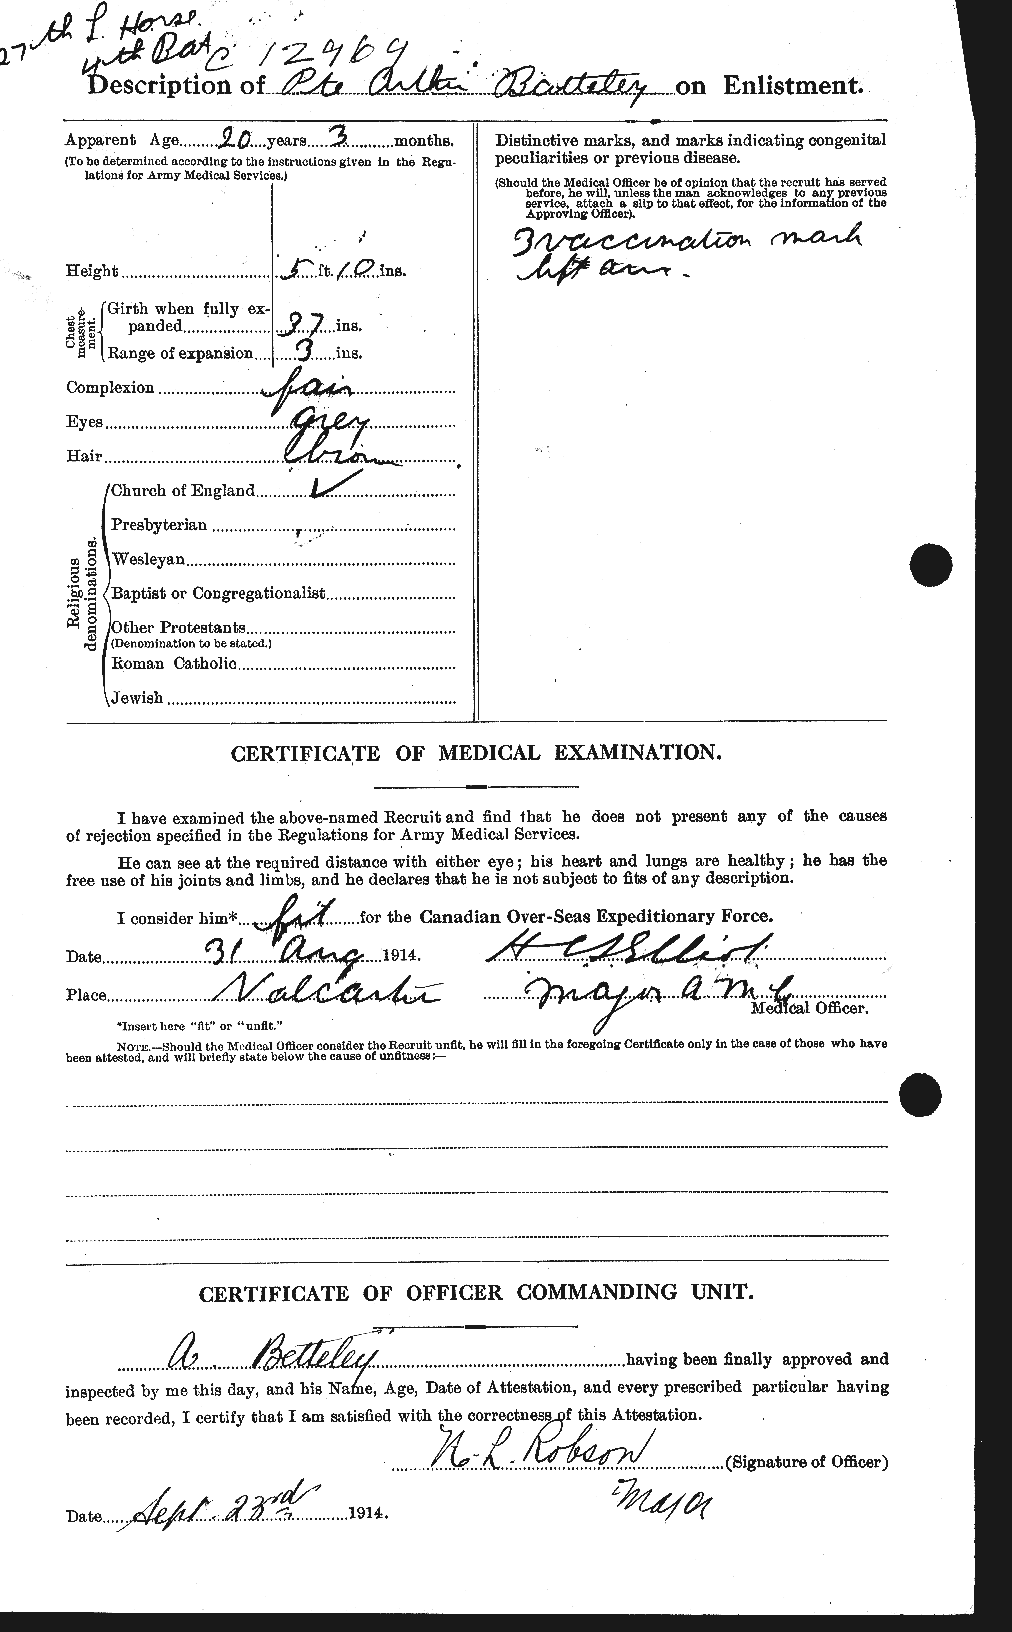 Dossiers du Personnel de la Première Guerre mondiale - CEC 237083b